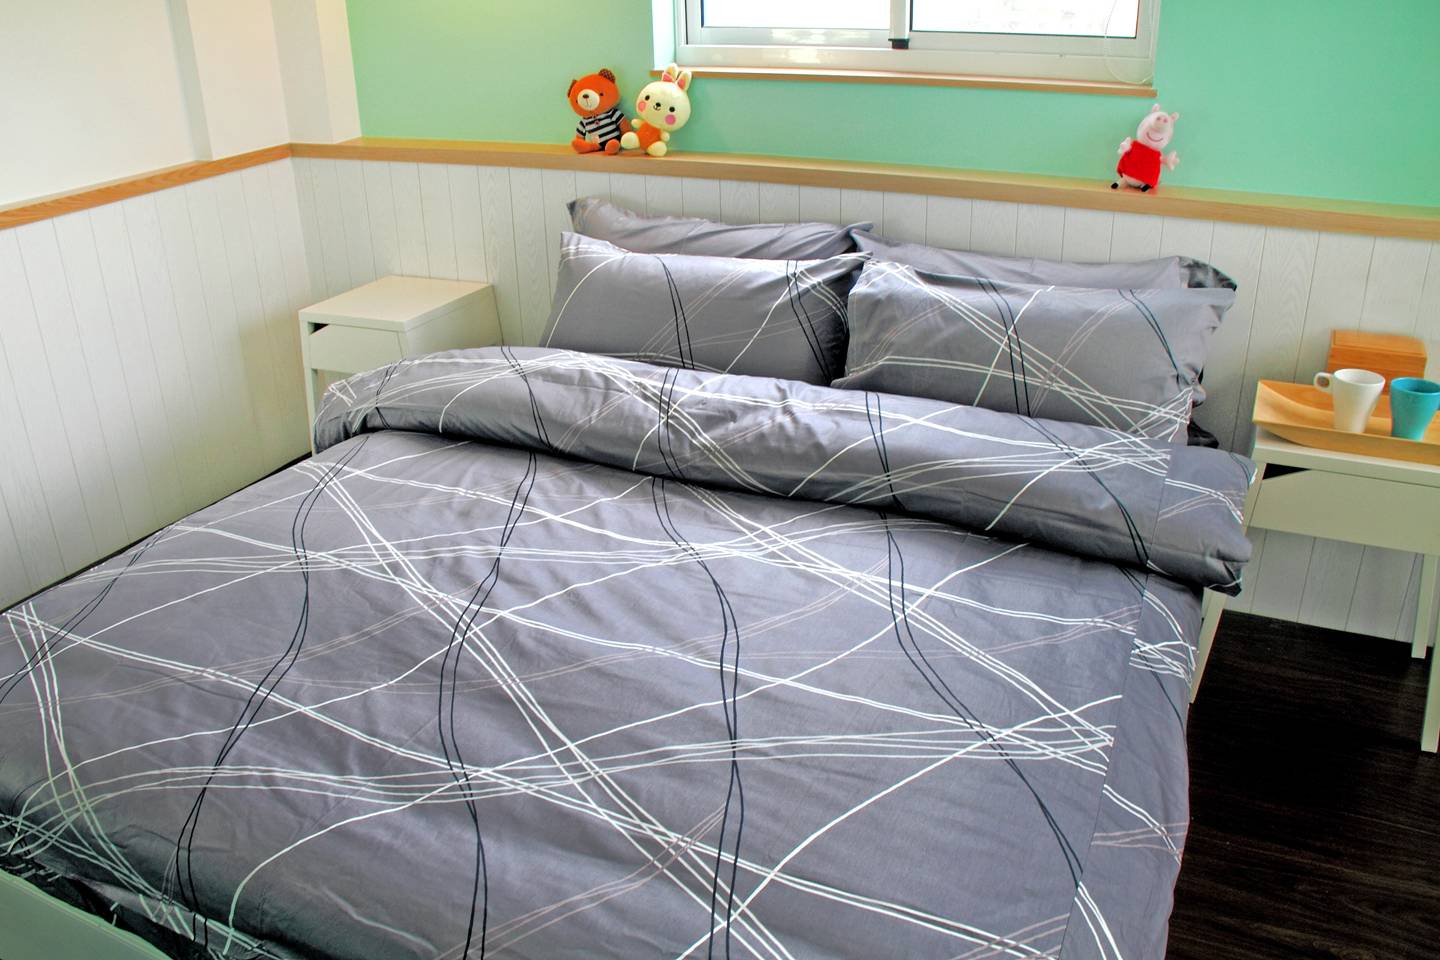 床包被套組 / 加大雙人 印花設計款 / 幾何線條 100%精梳棉  加大雙人床包被套組